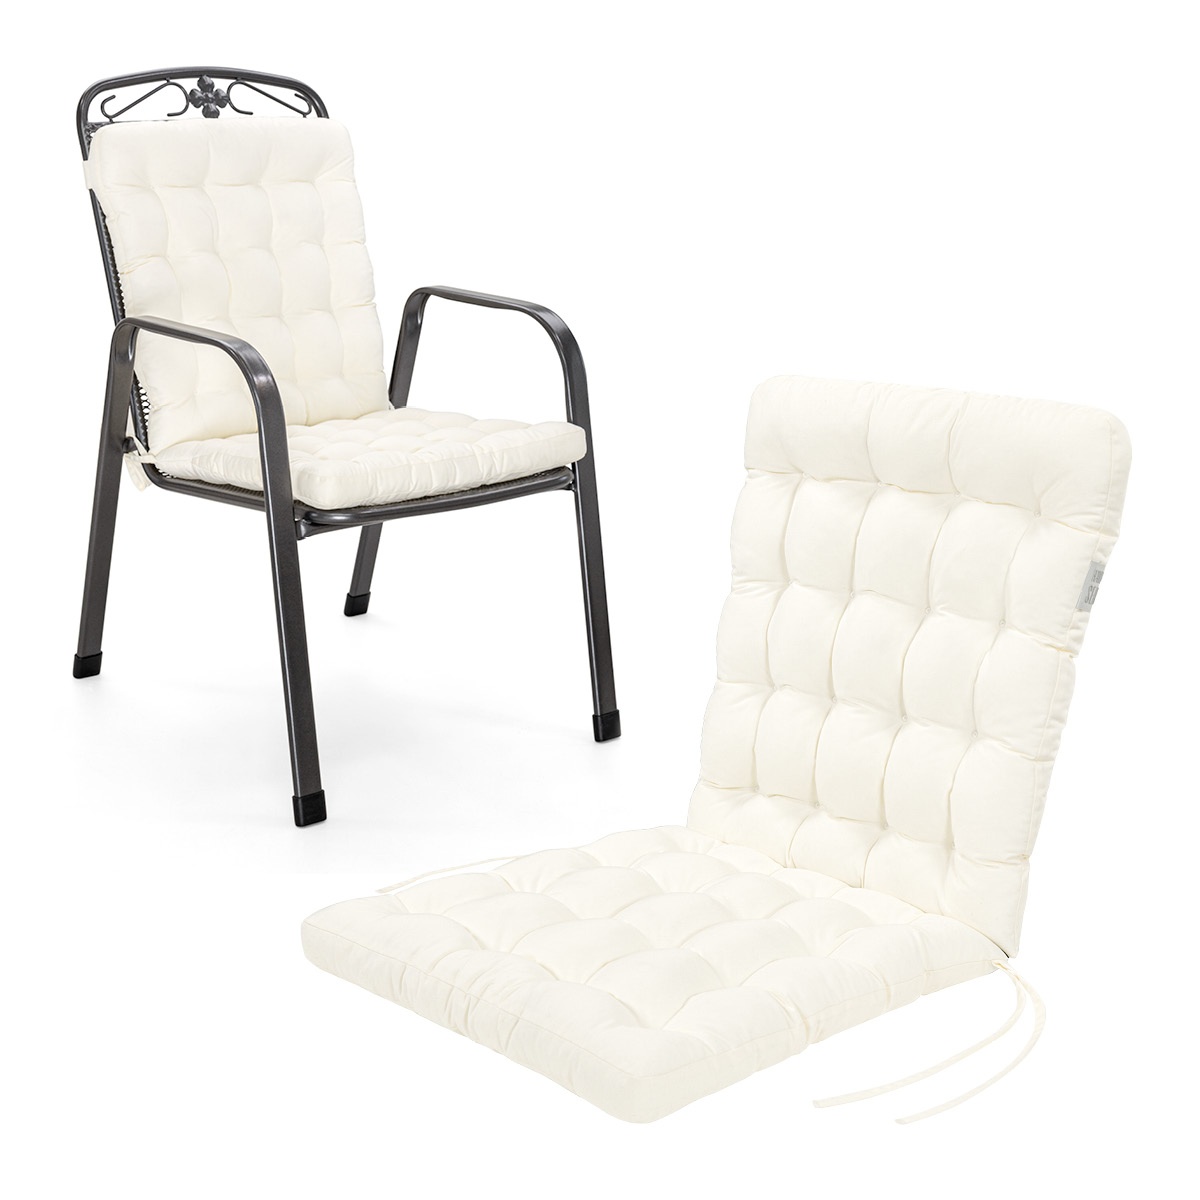 Cuscino per sedia con schienale basso 100x48 cm | Bianco